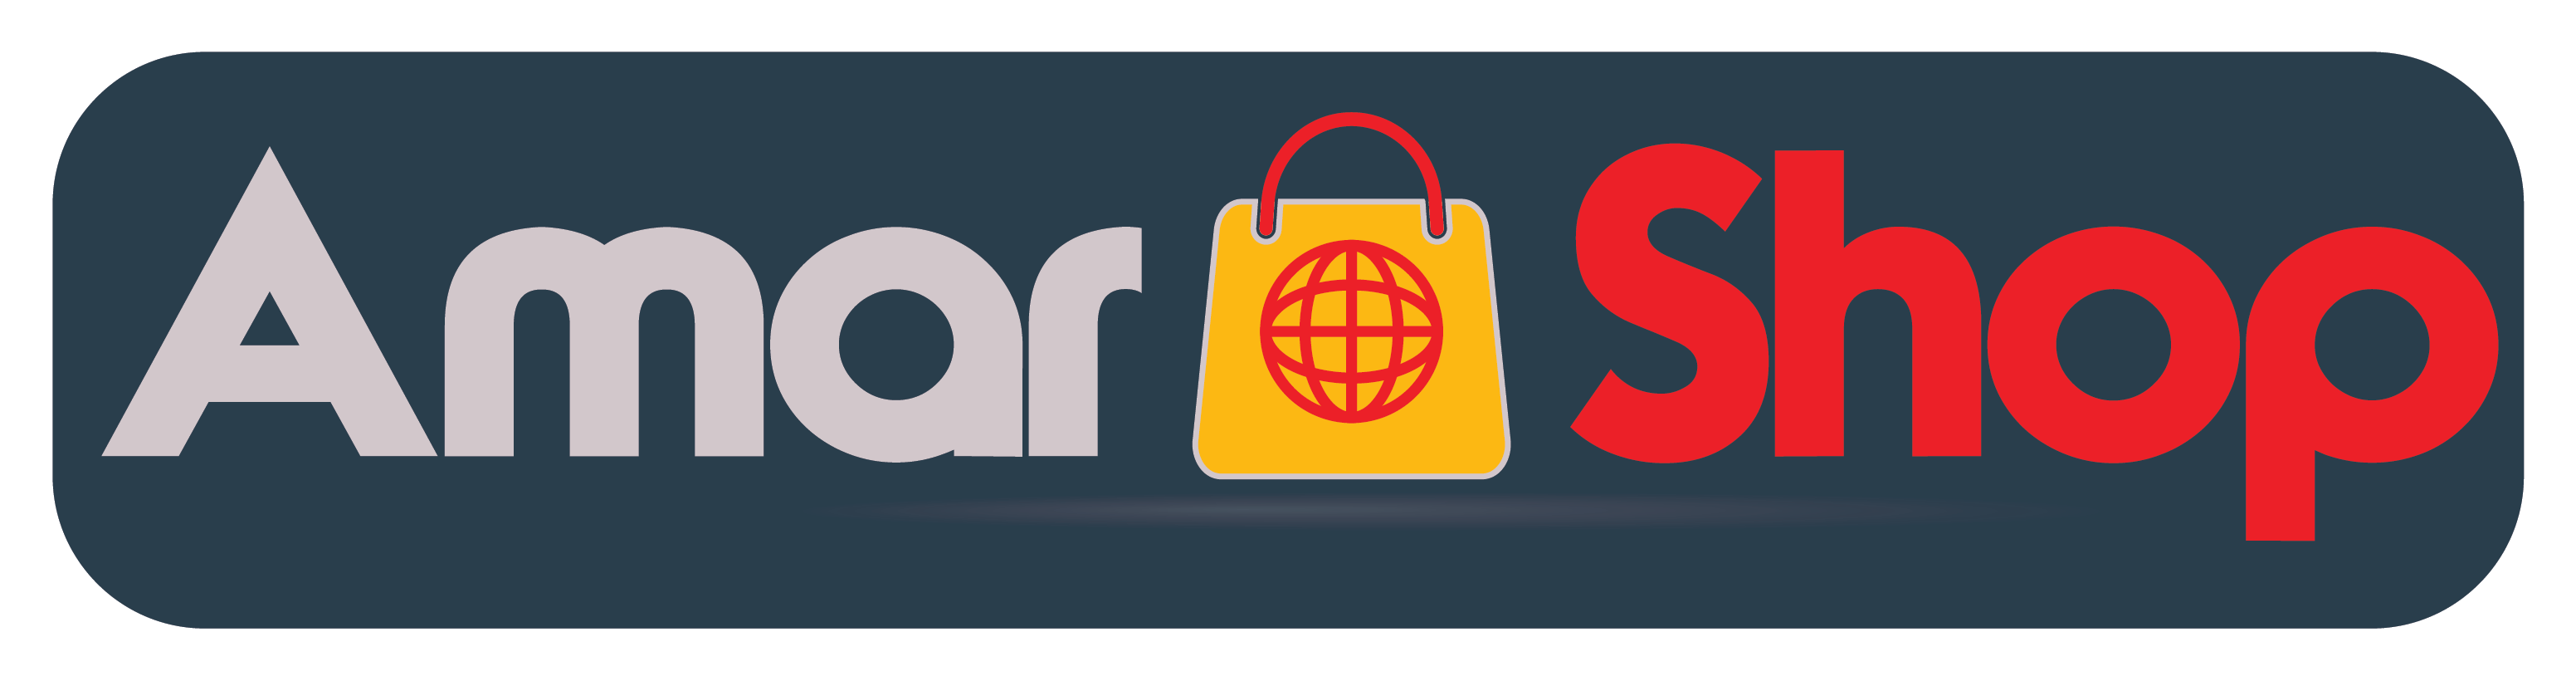 Amar Shop Online Ltd